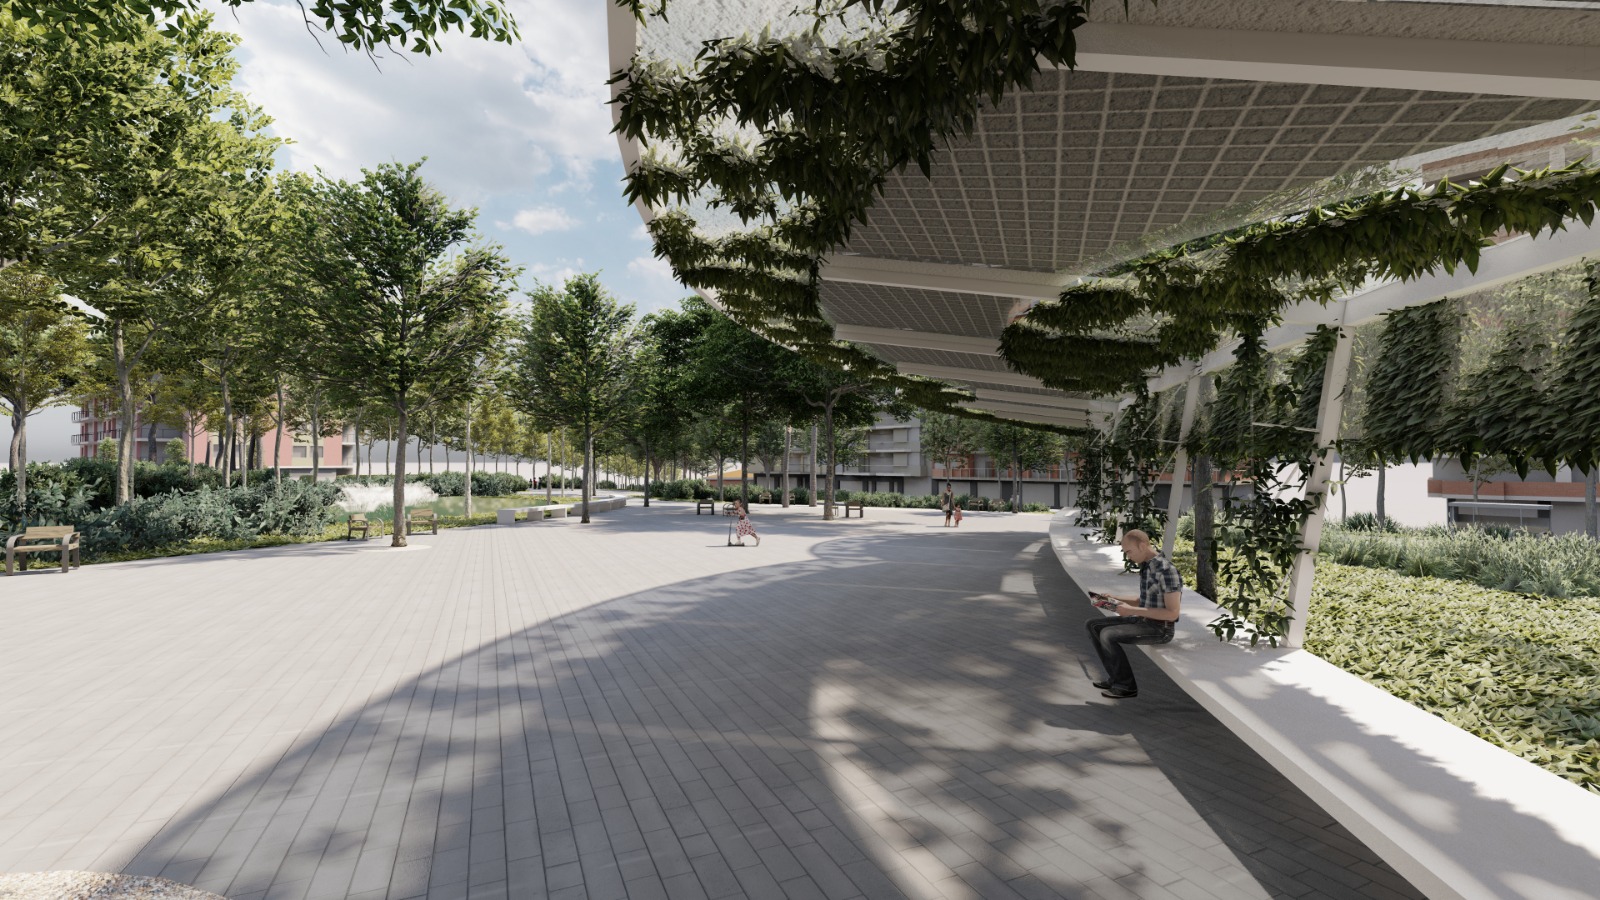 Avenida Eramprunyà y plaza Catalunya tendrán una movilidad más segura, fluida y sostenible y se convertirán en un espacio más amable y más verde